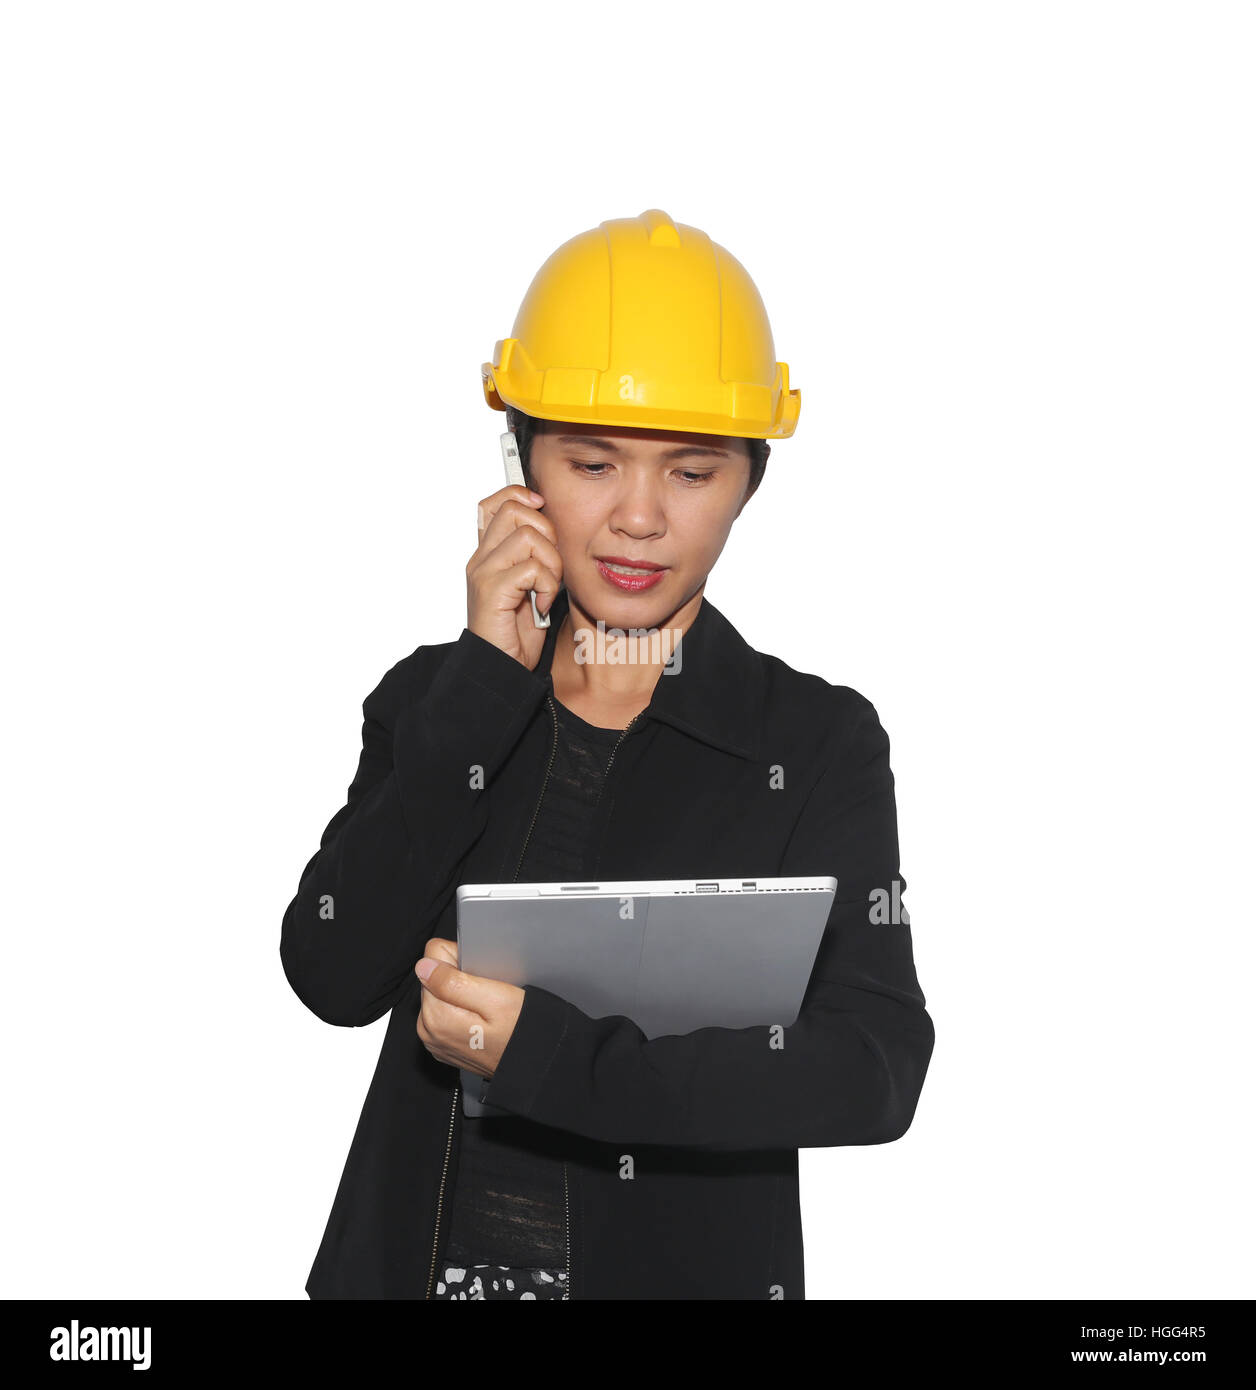 Le donne ingegneri è stato sul telefono per comunicare isolati su sfondo bianco e sono tracciati di ritaglio per una facile installazione. Foto Stock